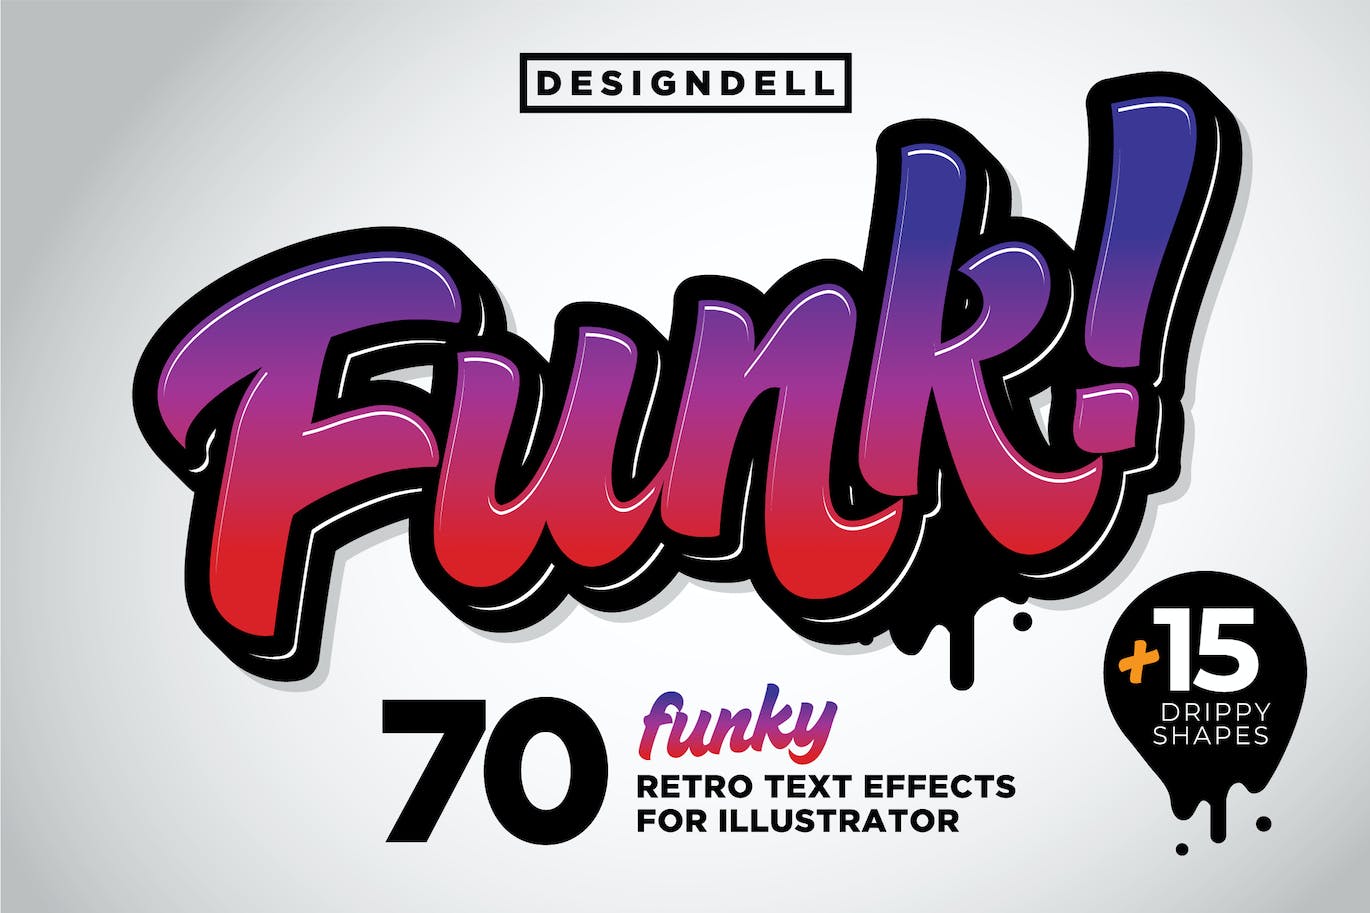 时髦彩色3D图形矢量样式 Funk! 3D Graphic Styles 图片素材 第1张